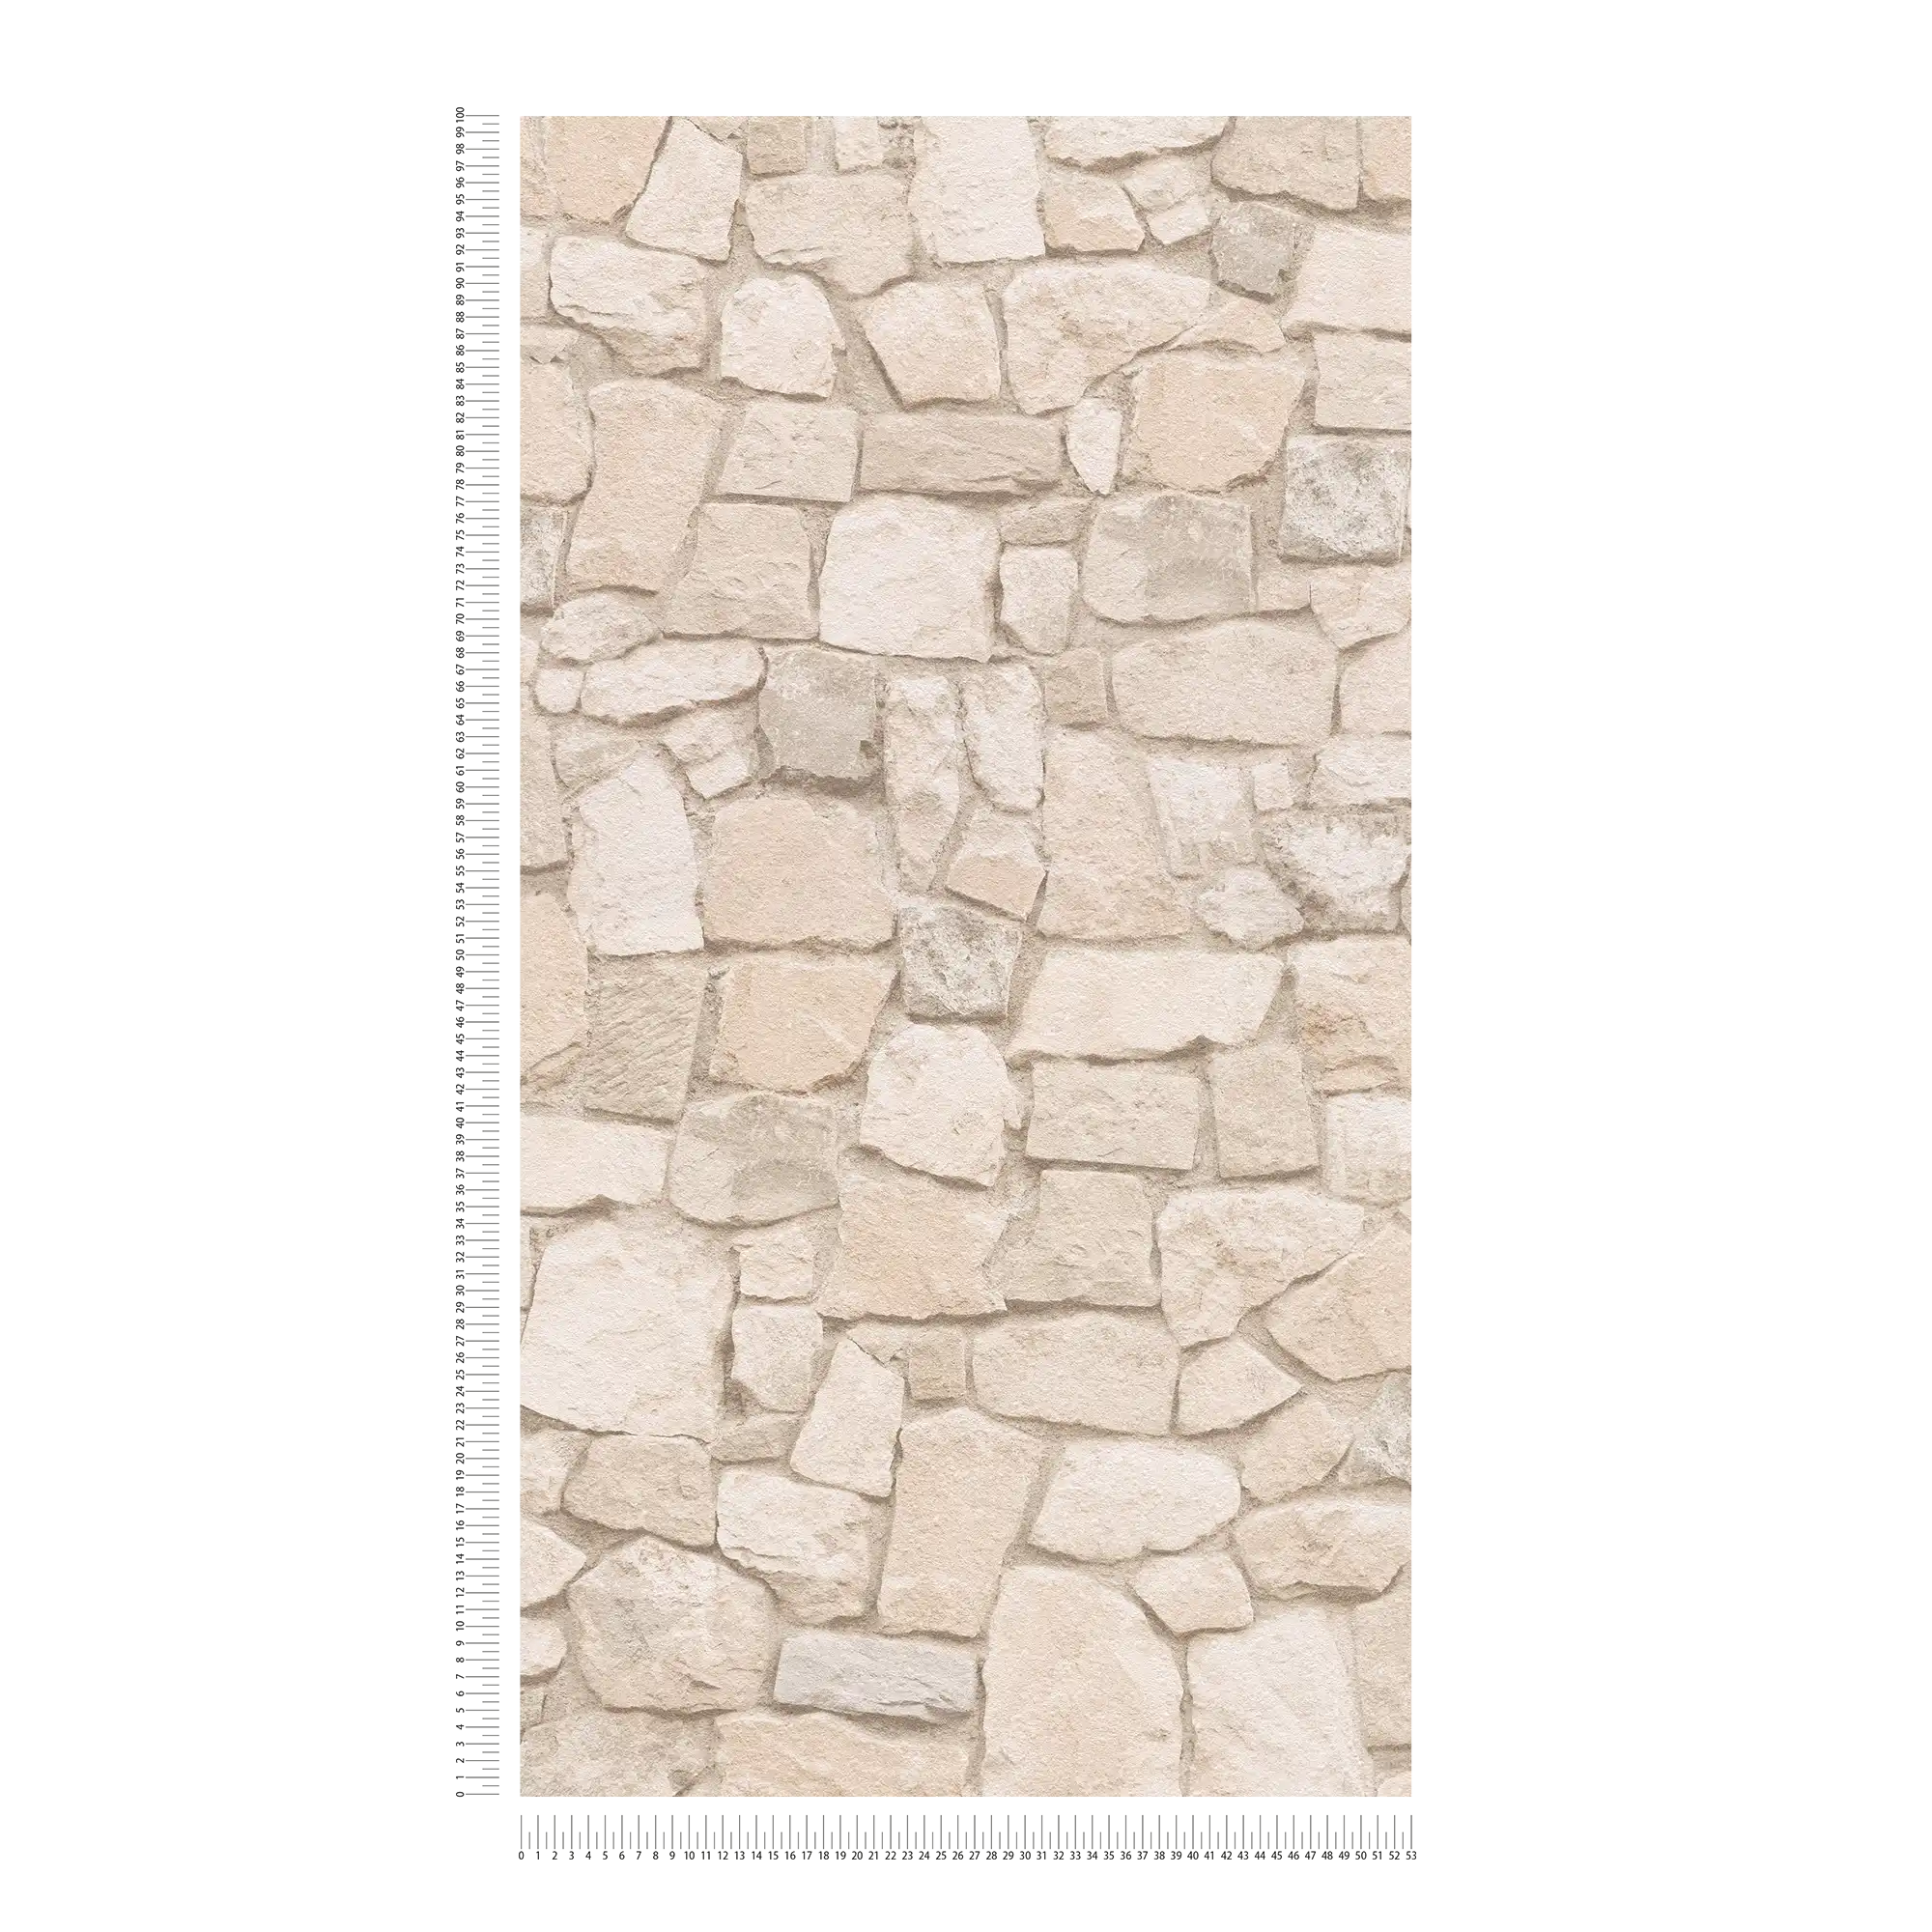             Papel pintado de piedra con efecto 3D y mampostería de arenisca - Beige, Marrón
        